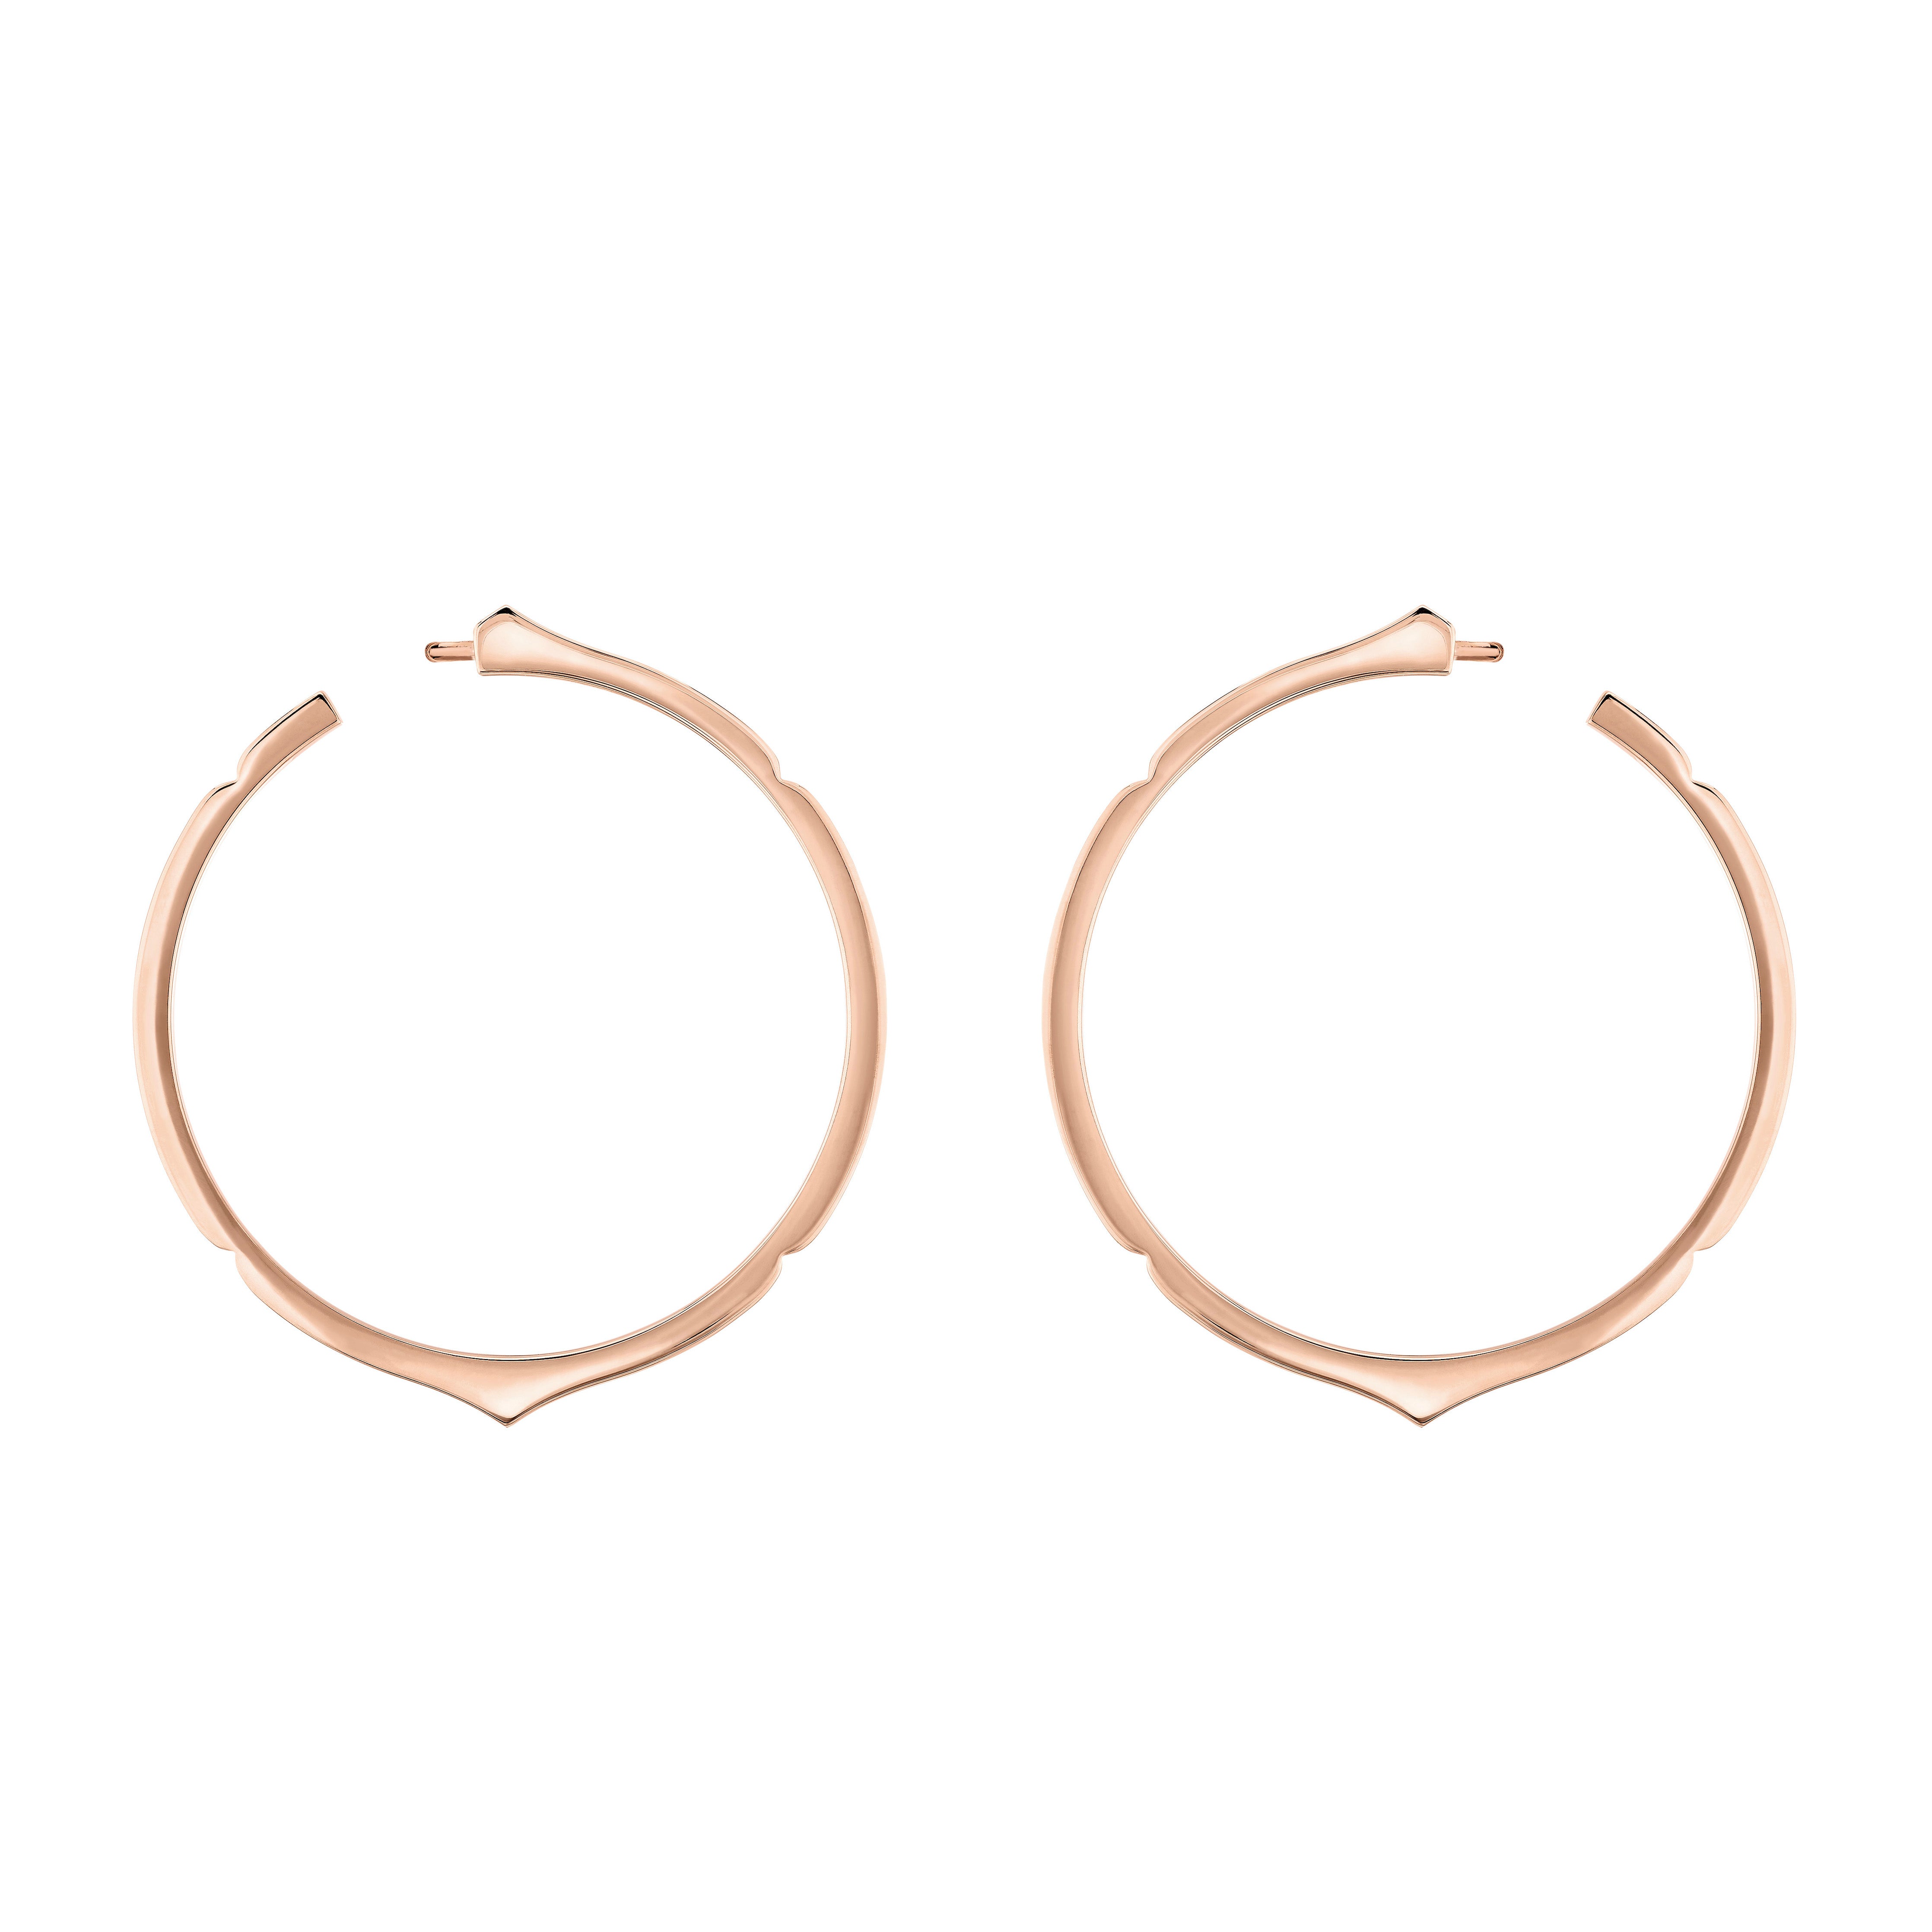 The Aura Hoop Earrings in Rose Gold